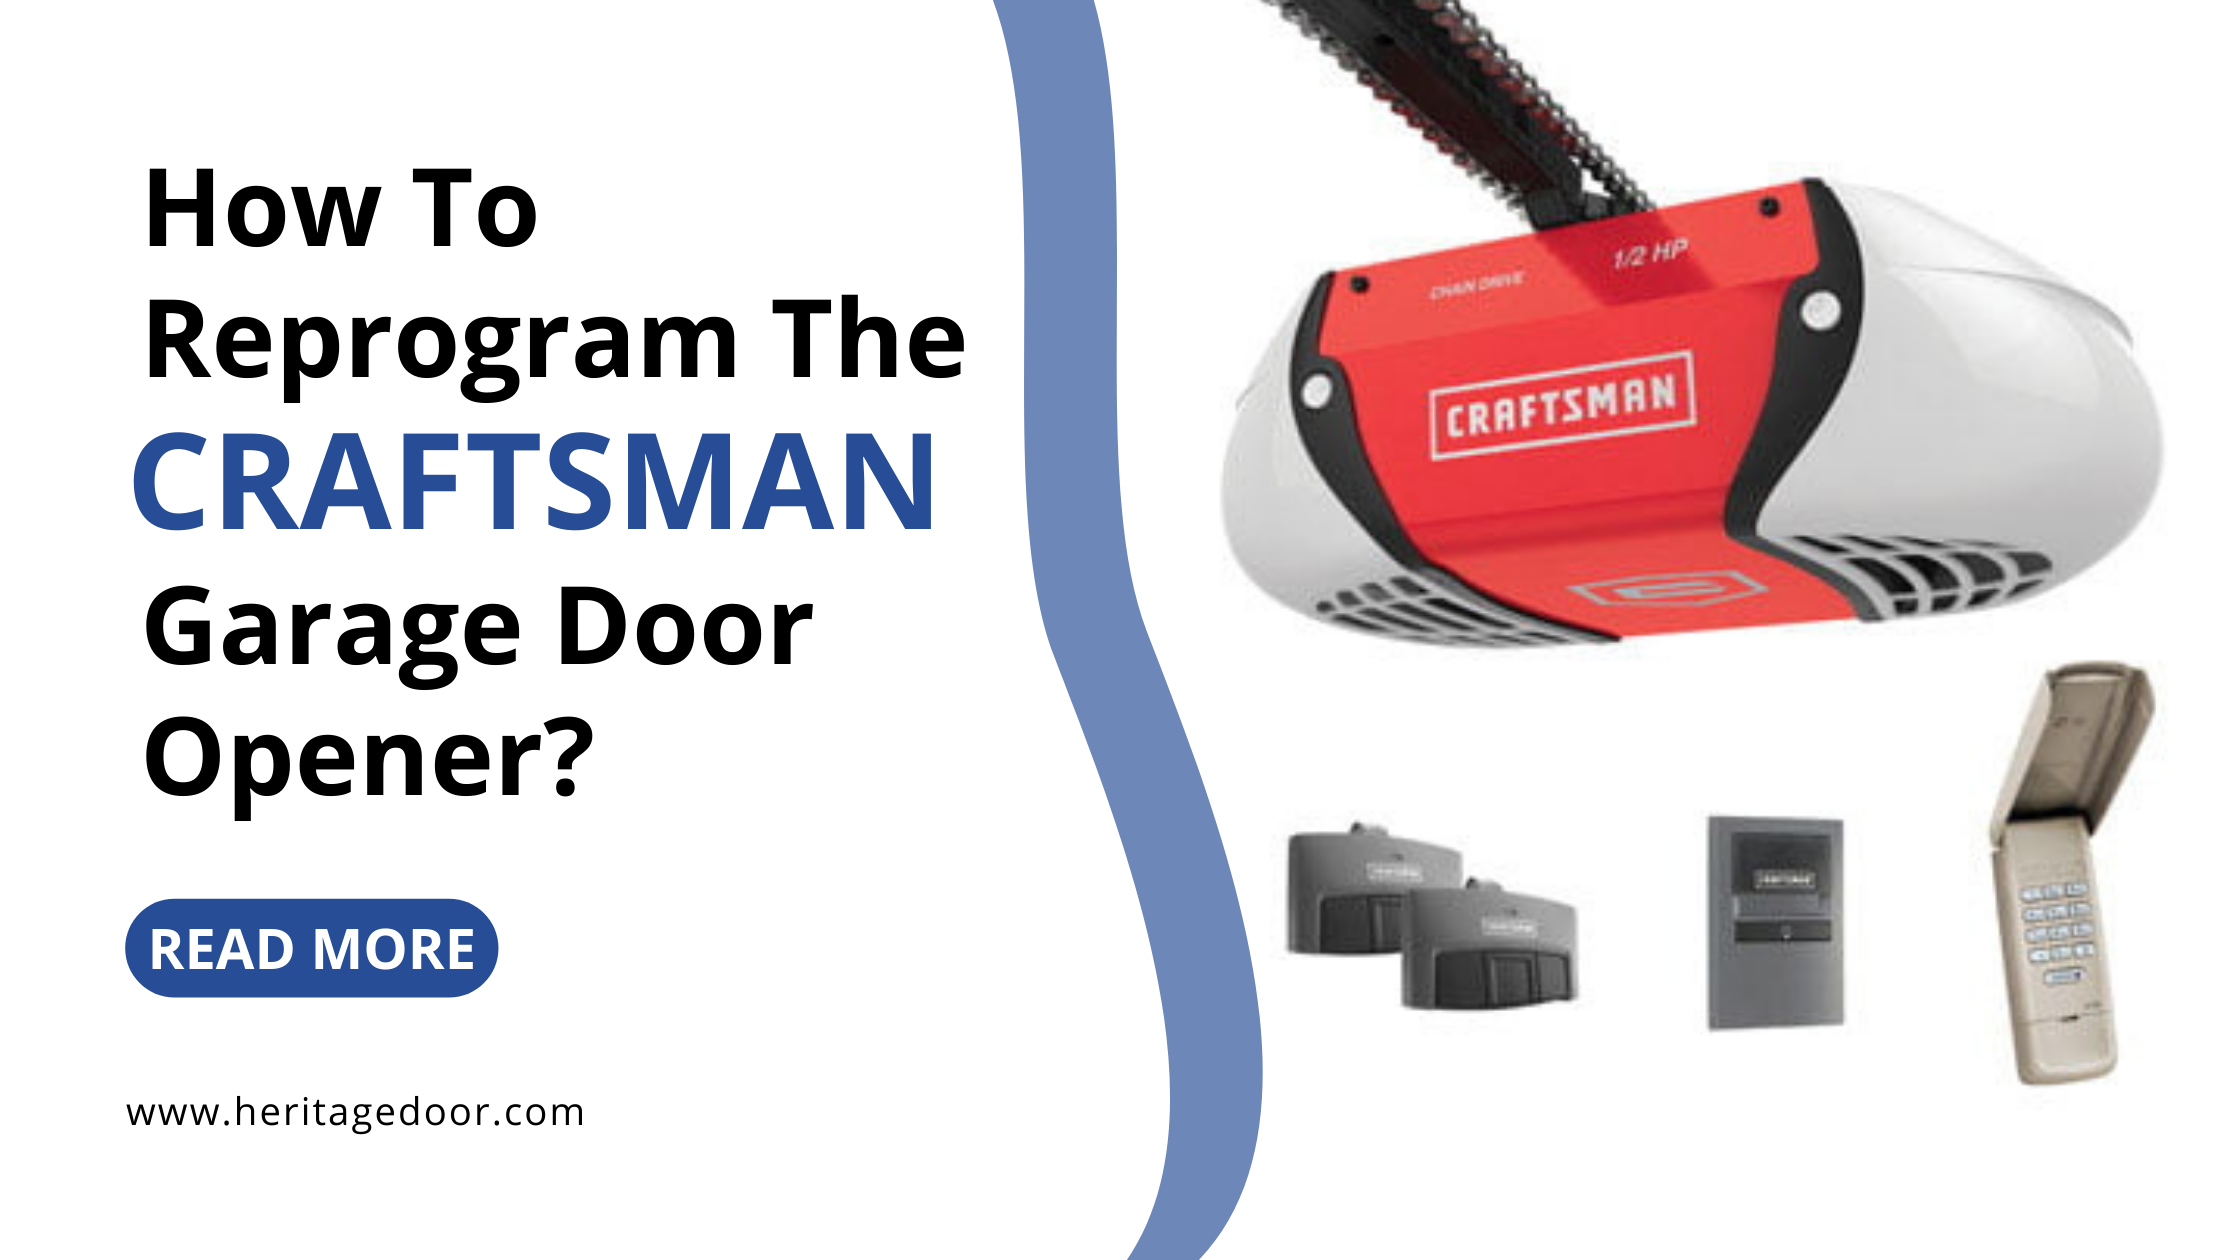 How To Reprogram The Craftsman Garage Door Opener